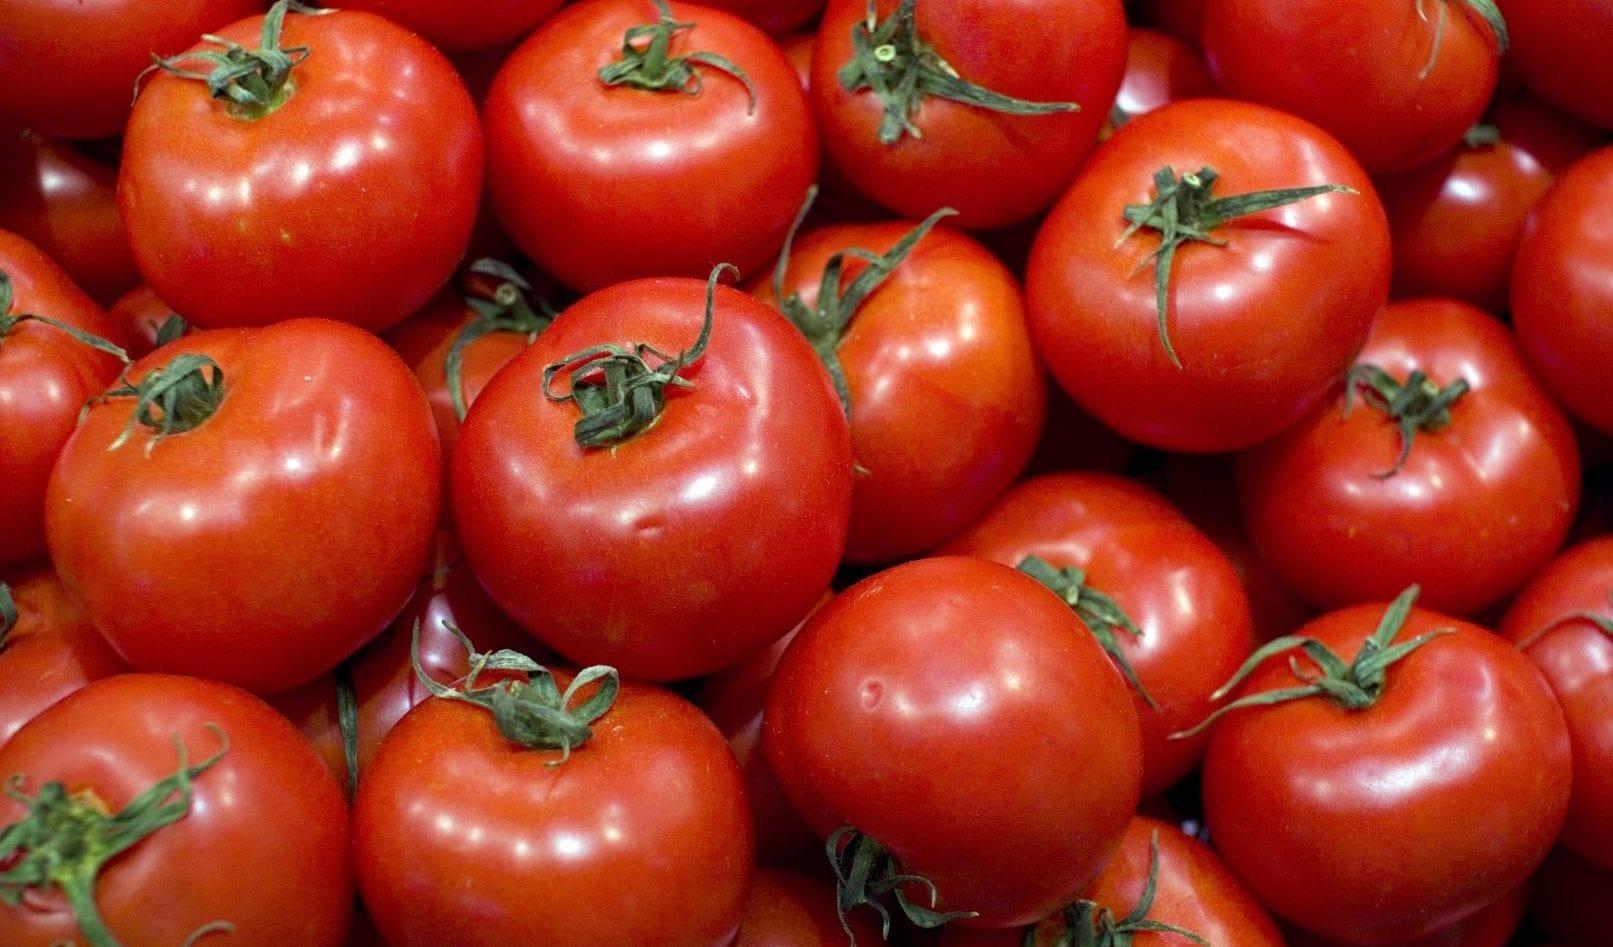 Frutas e legumes ficam mais caros; tomate apresenta aumento de 21,99%